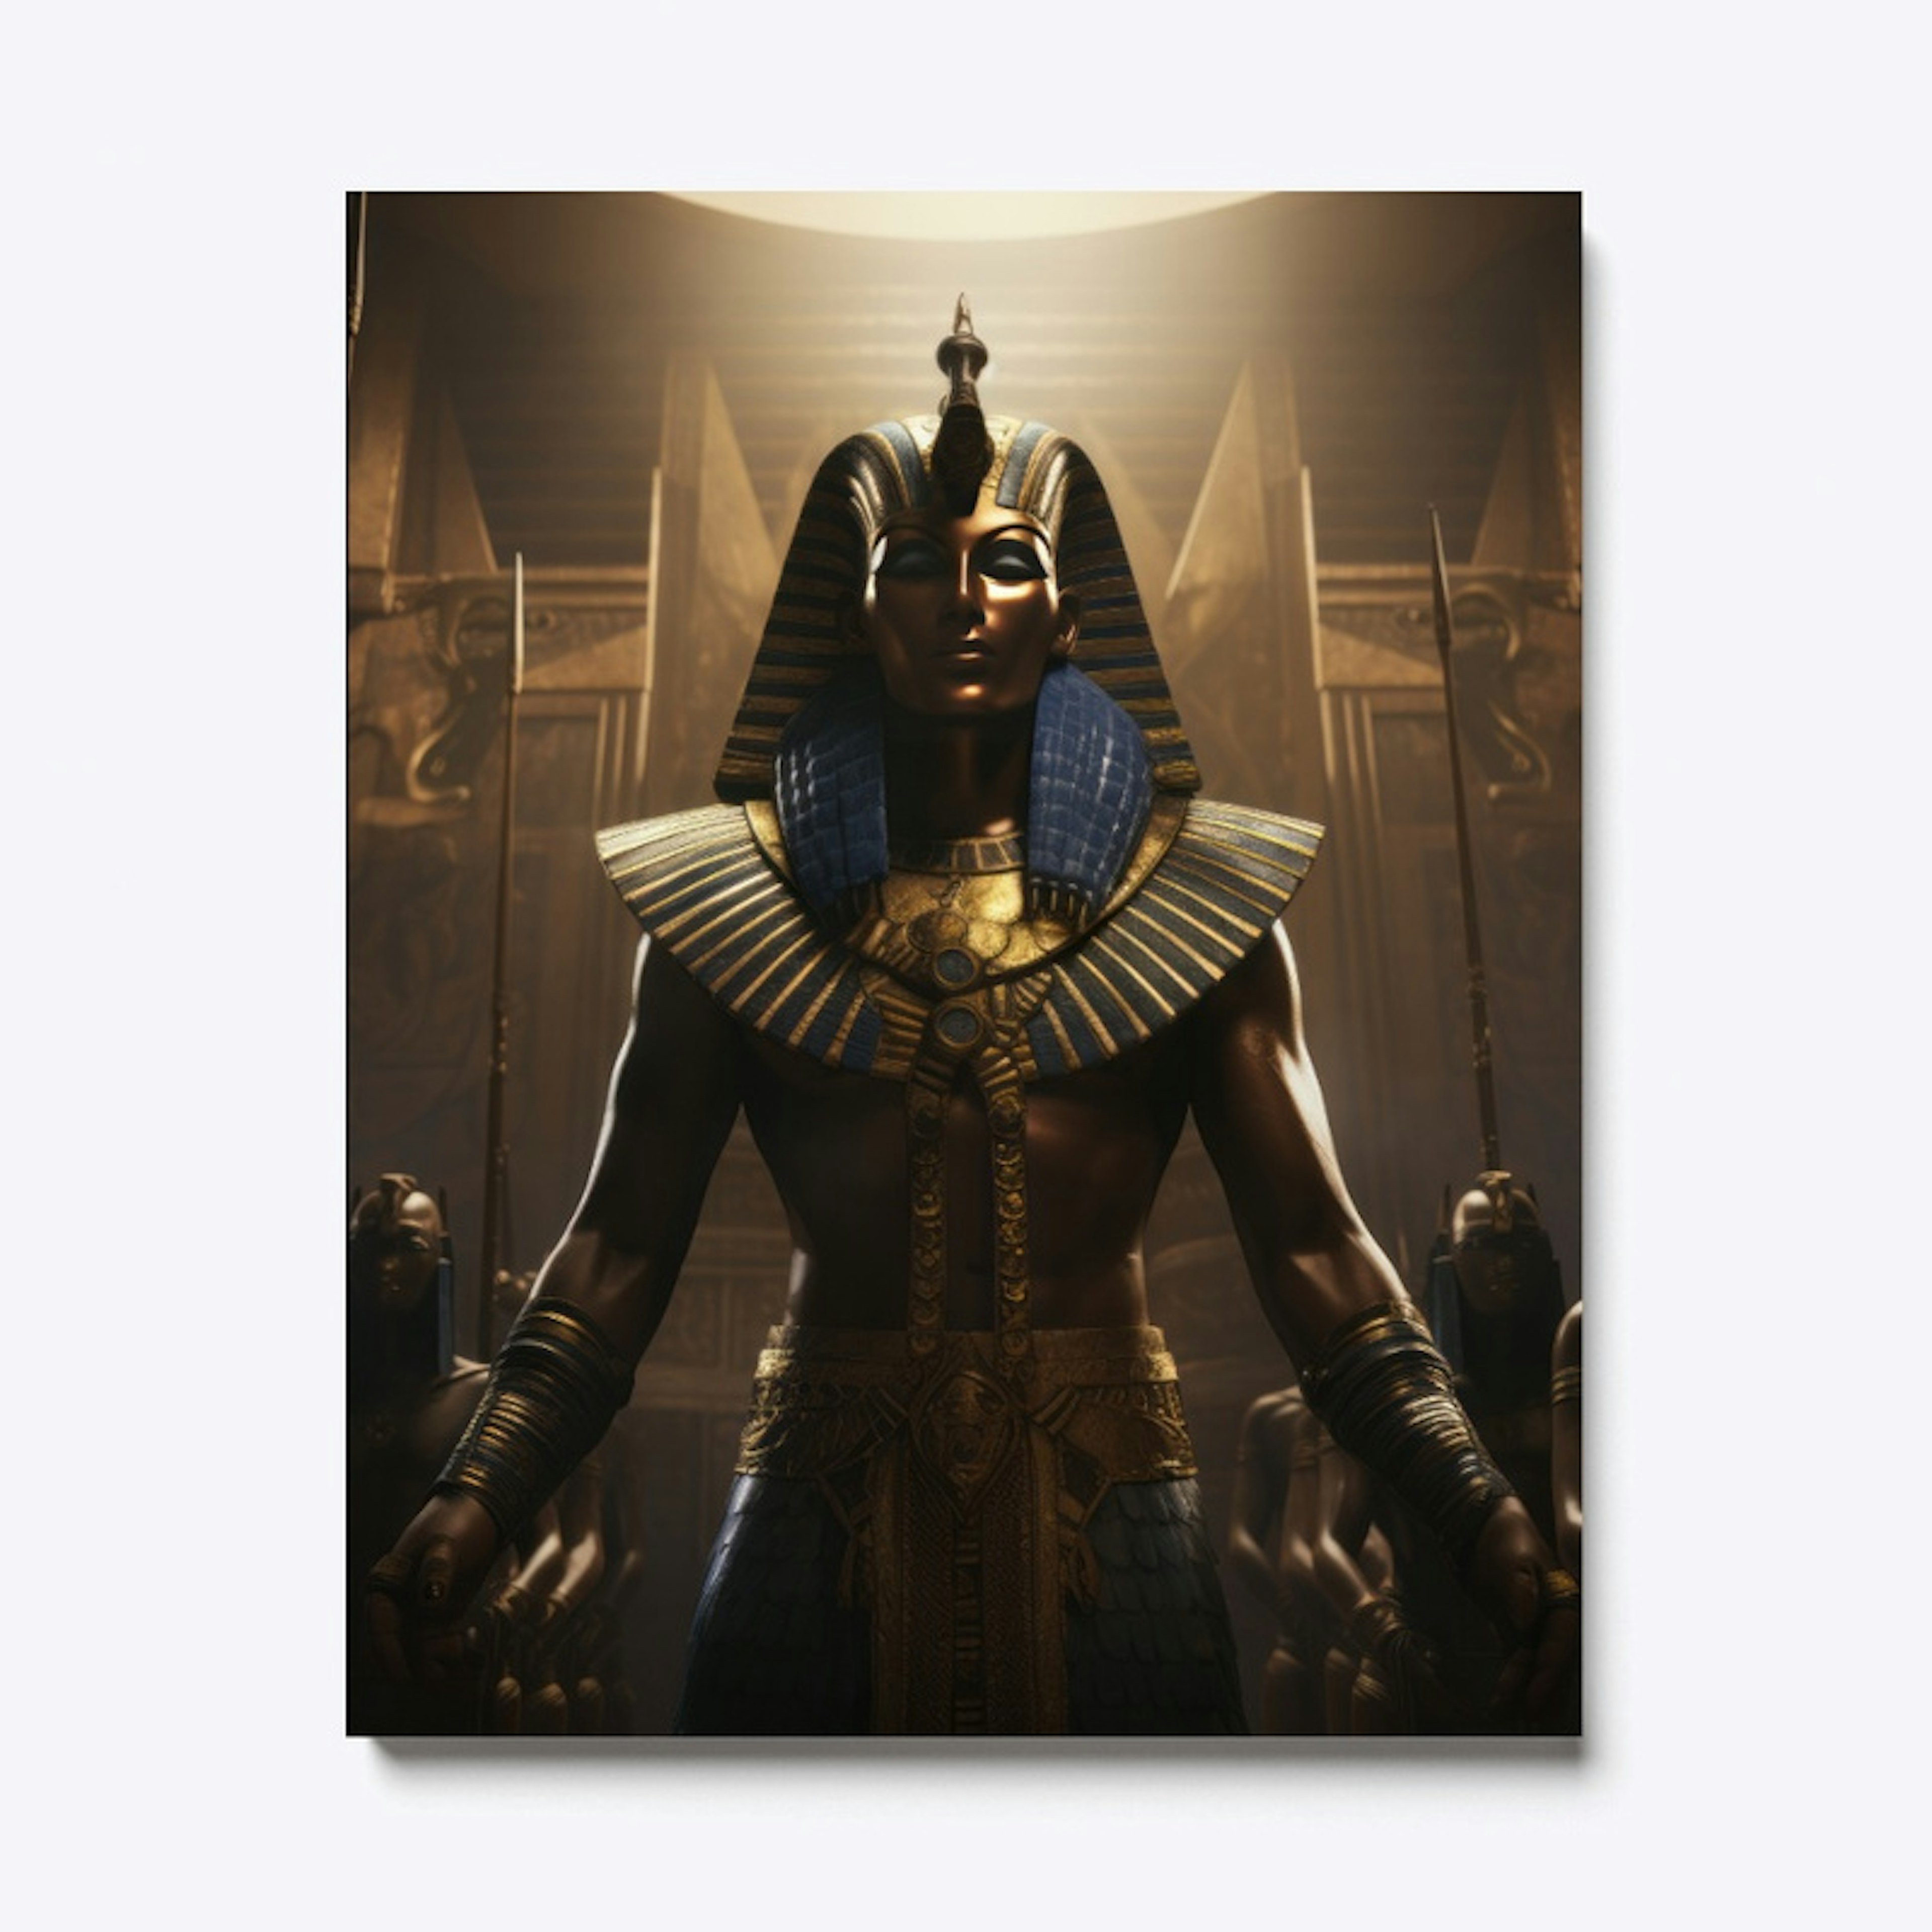 Ancient Egyptian Pharaoh